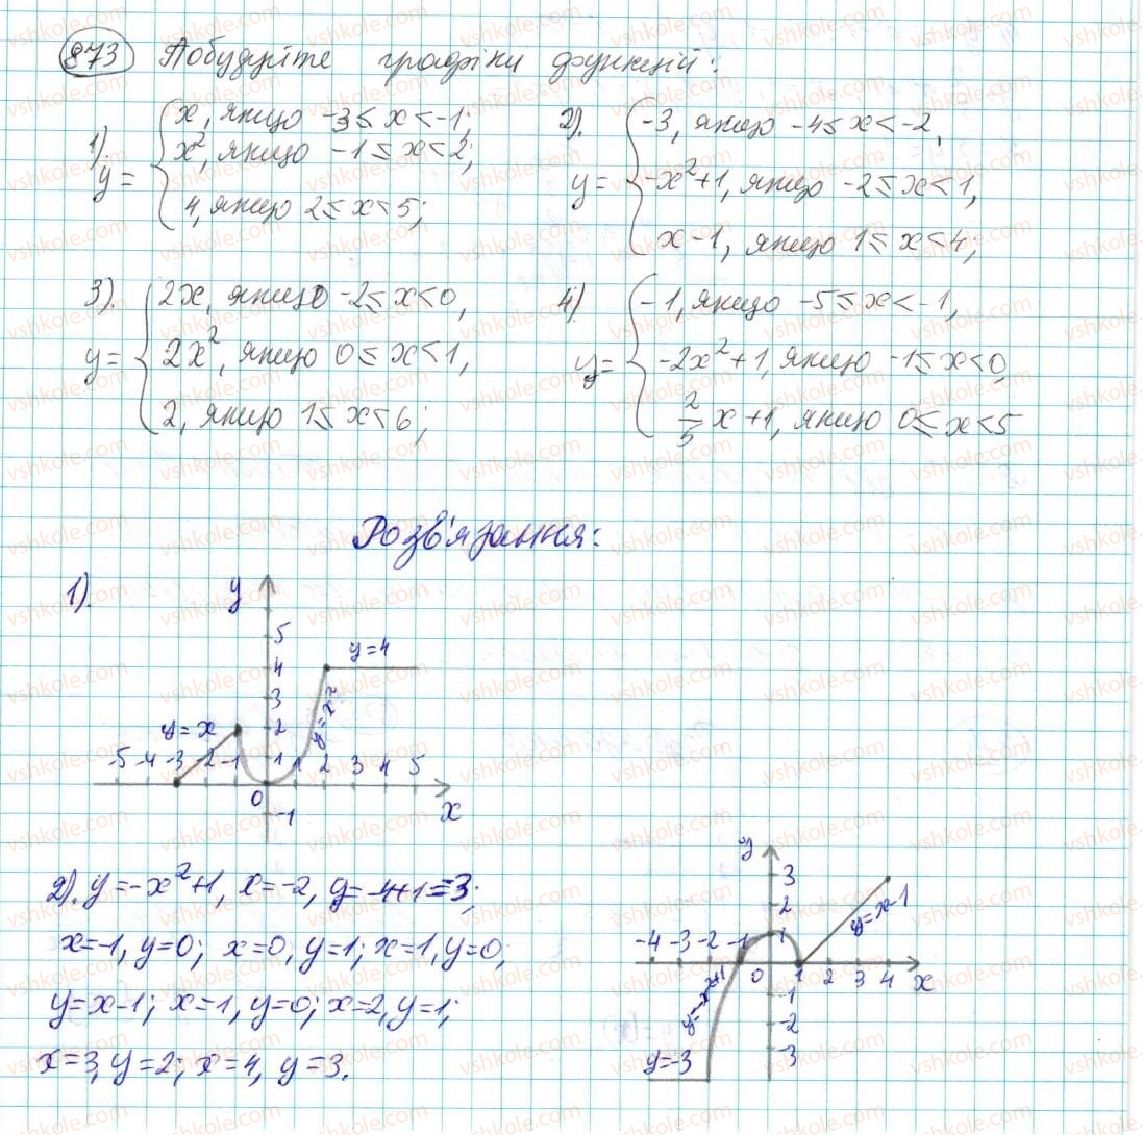 7-algebra-na-tarasenkova-im-bogatirova-om-kolomiyets-2015--rozdil-4-funktsii-16-koordinatna-ploschina-grafik-funktsiyi-873.jpg